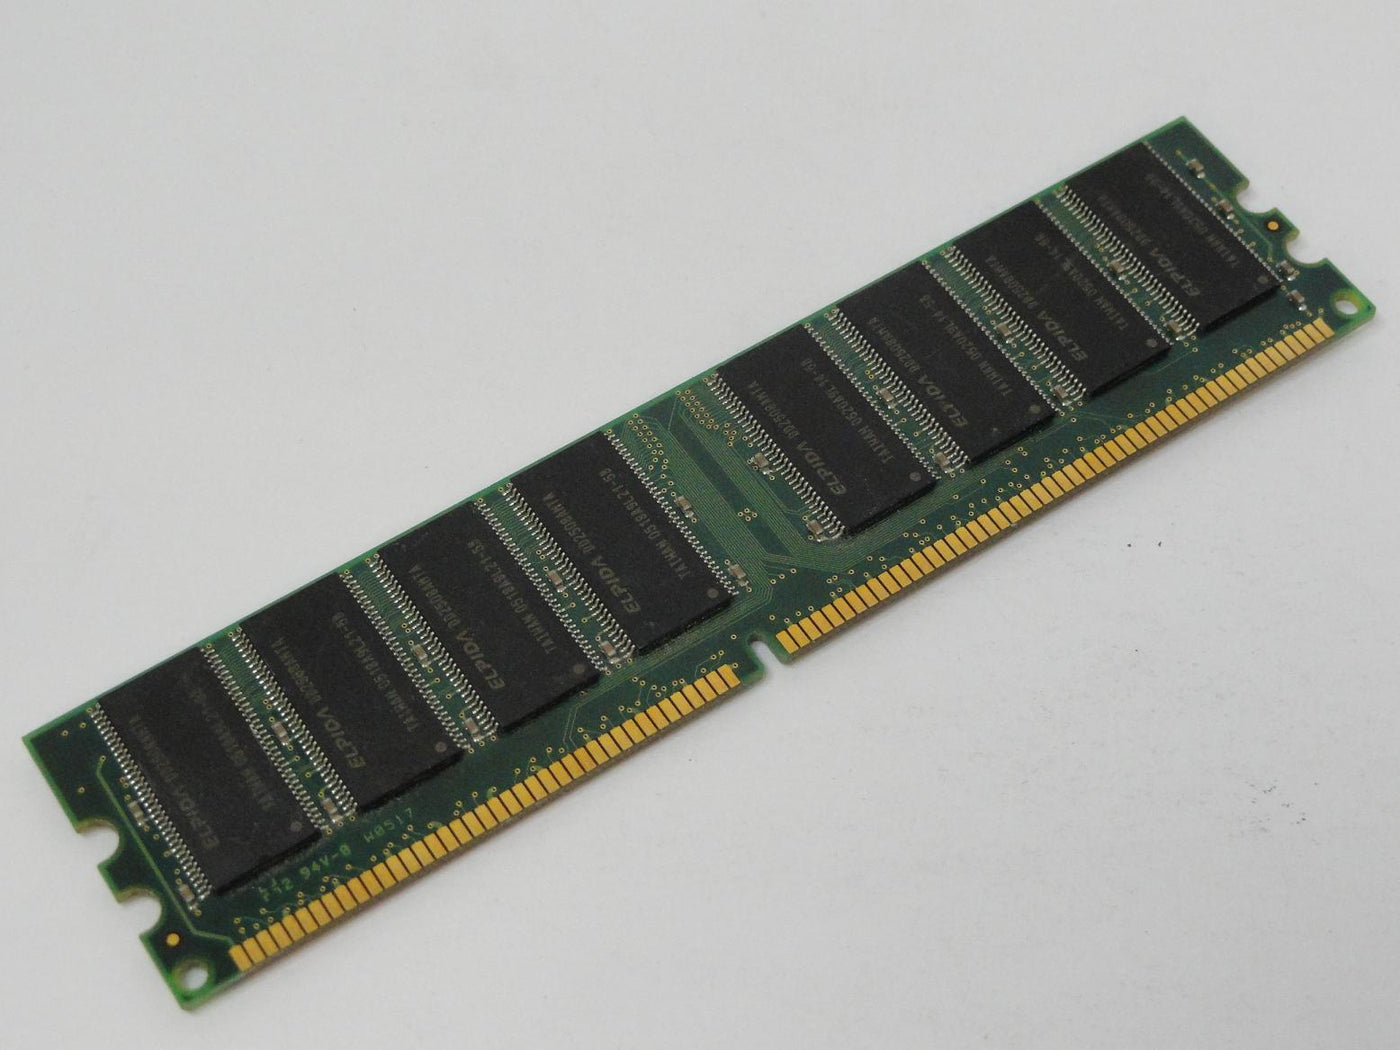 PR25350_9905193-015.A00_Kingston 512MB PC3200 DDR-400MHz DIMM RAM - Image2